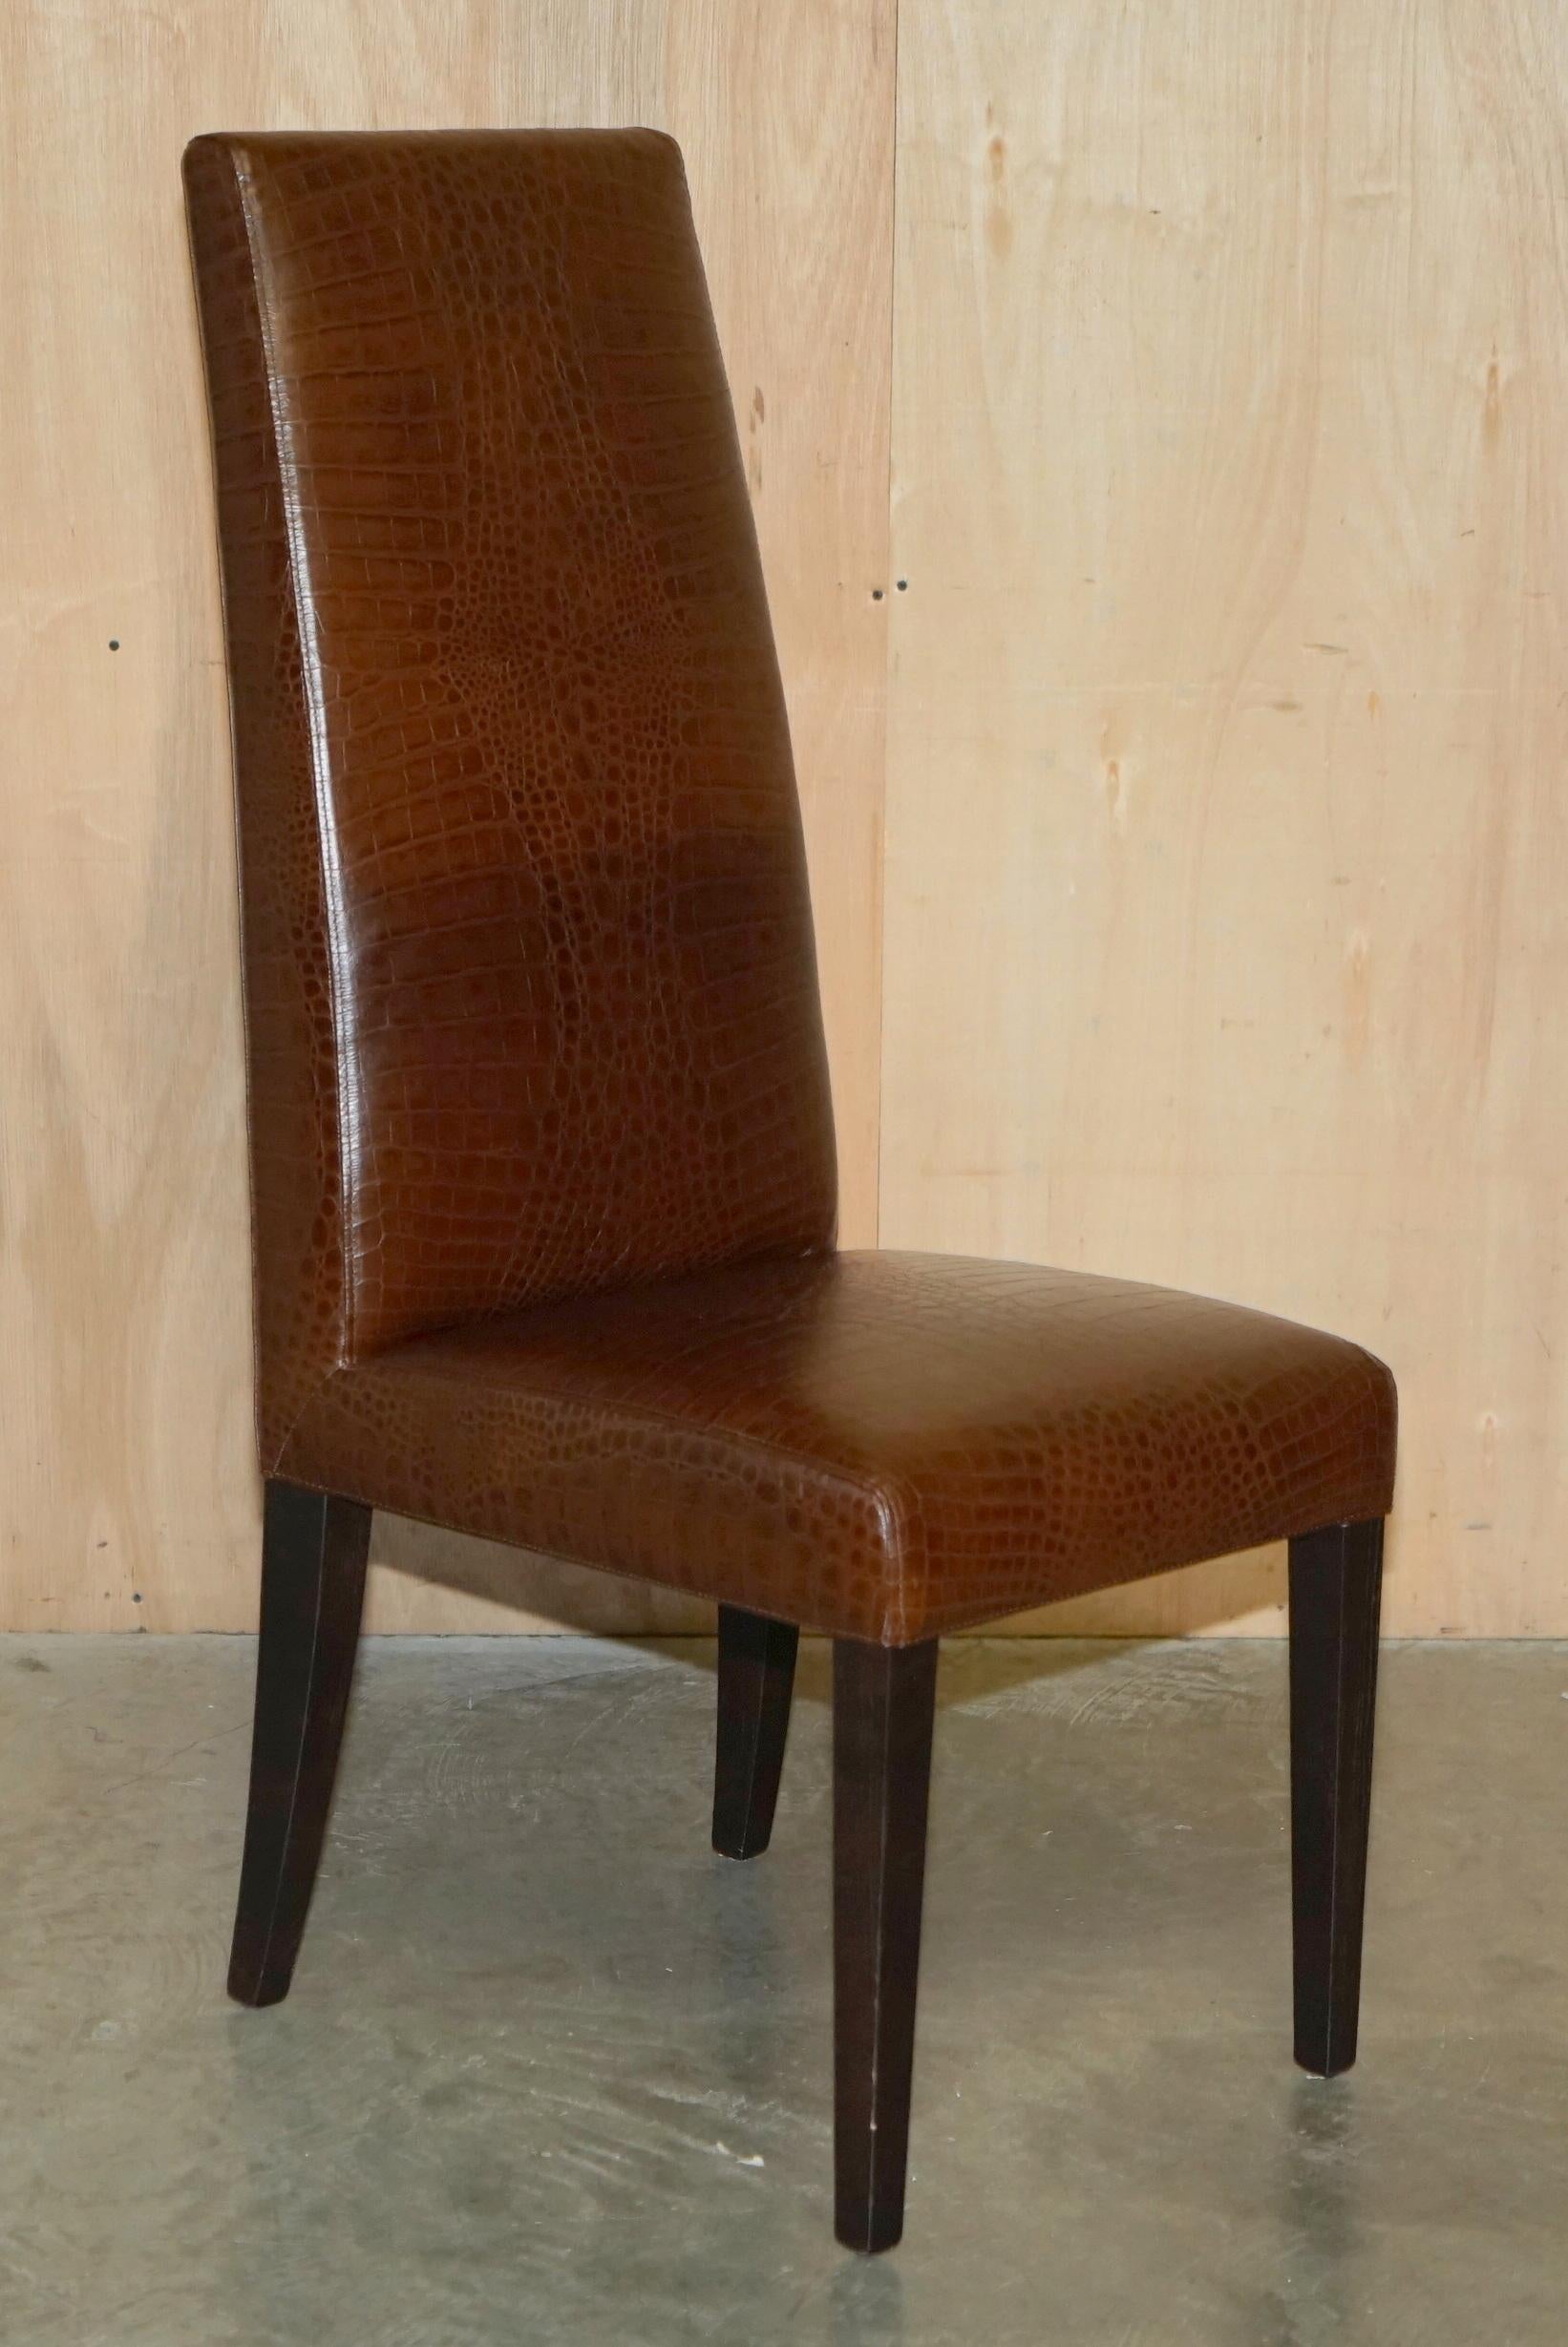 Royal House Antiques

The House Antiques a le plaisir d'offrir à la vente cette paire de chaises d'appoint en cuir marron à haut dossier, fabriquées à la main par Fendi Casa, patine alligator/crocodile teintée à la main. 

Veuillez noter que les